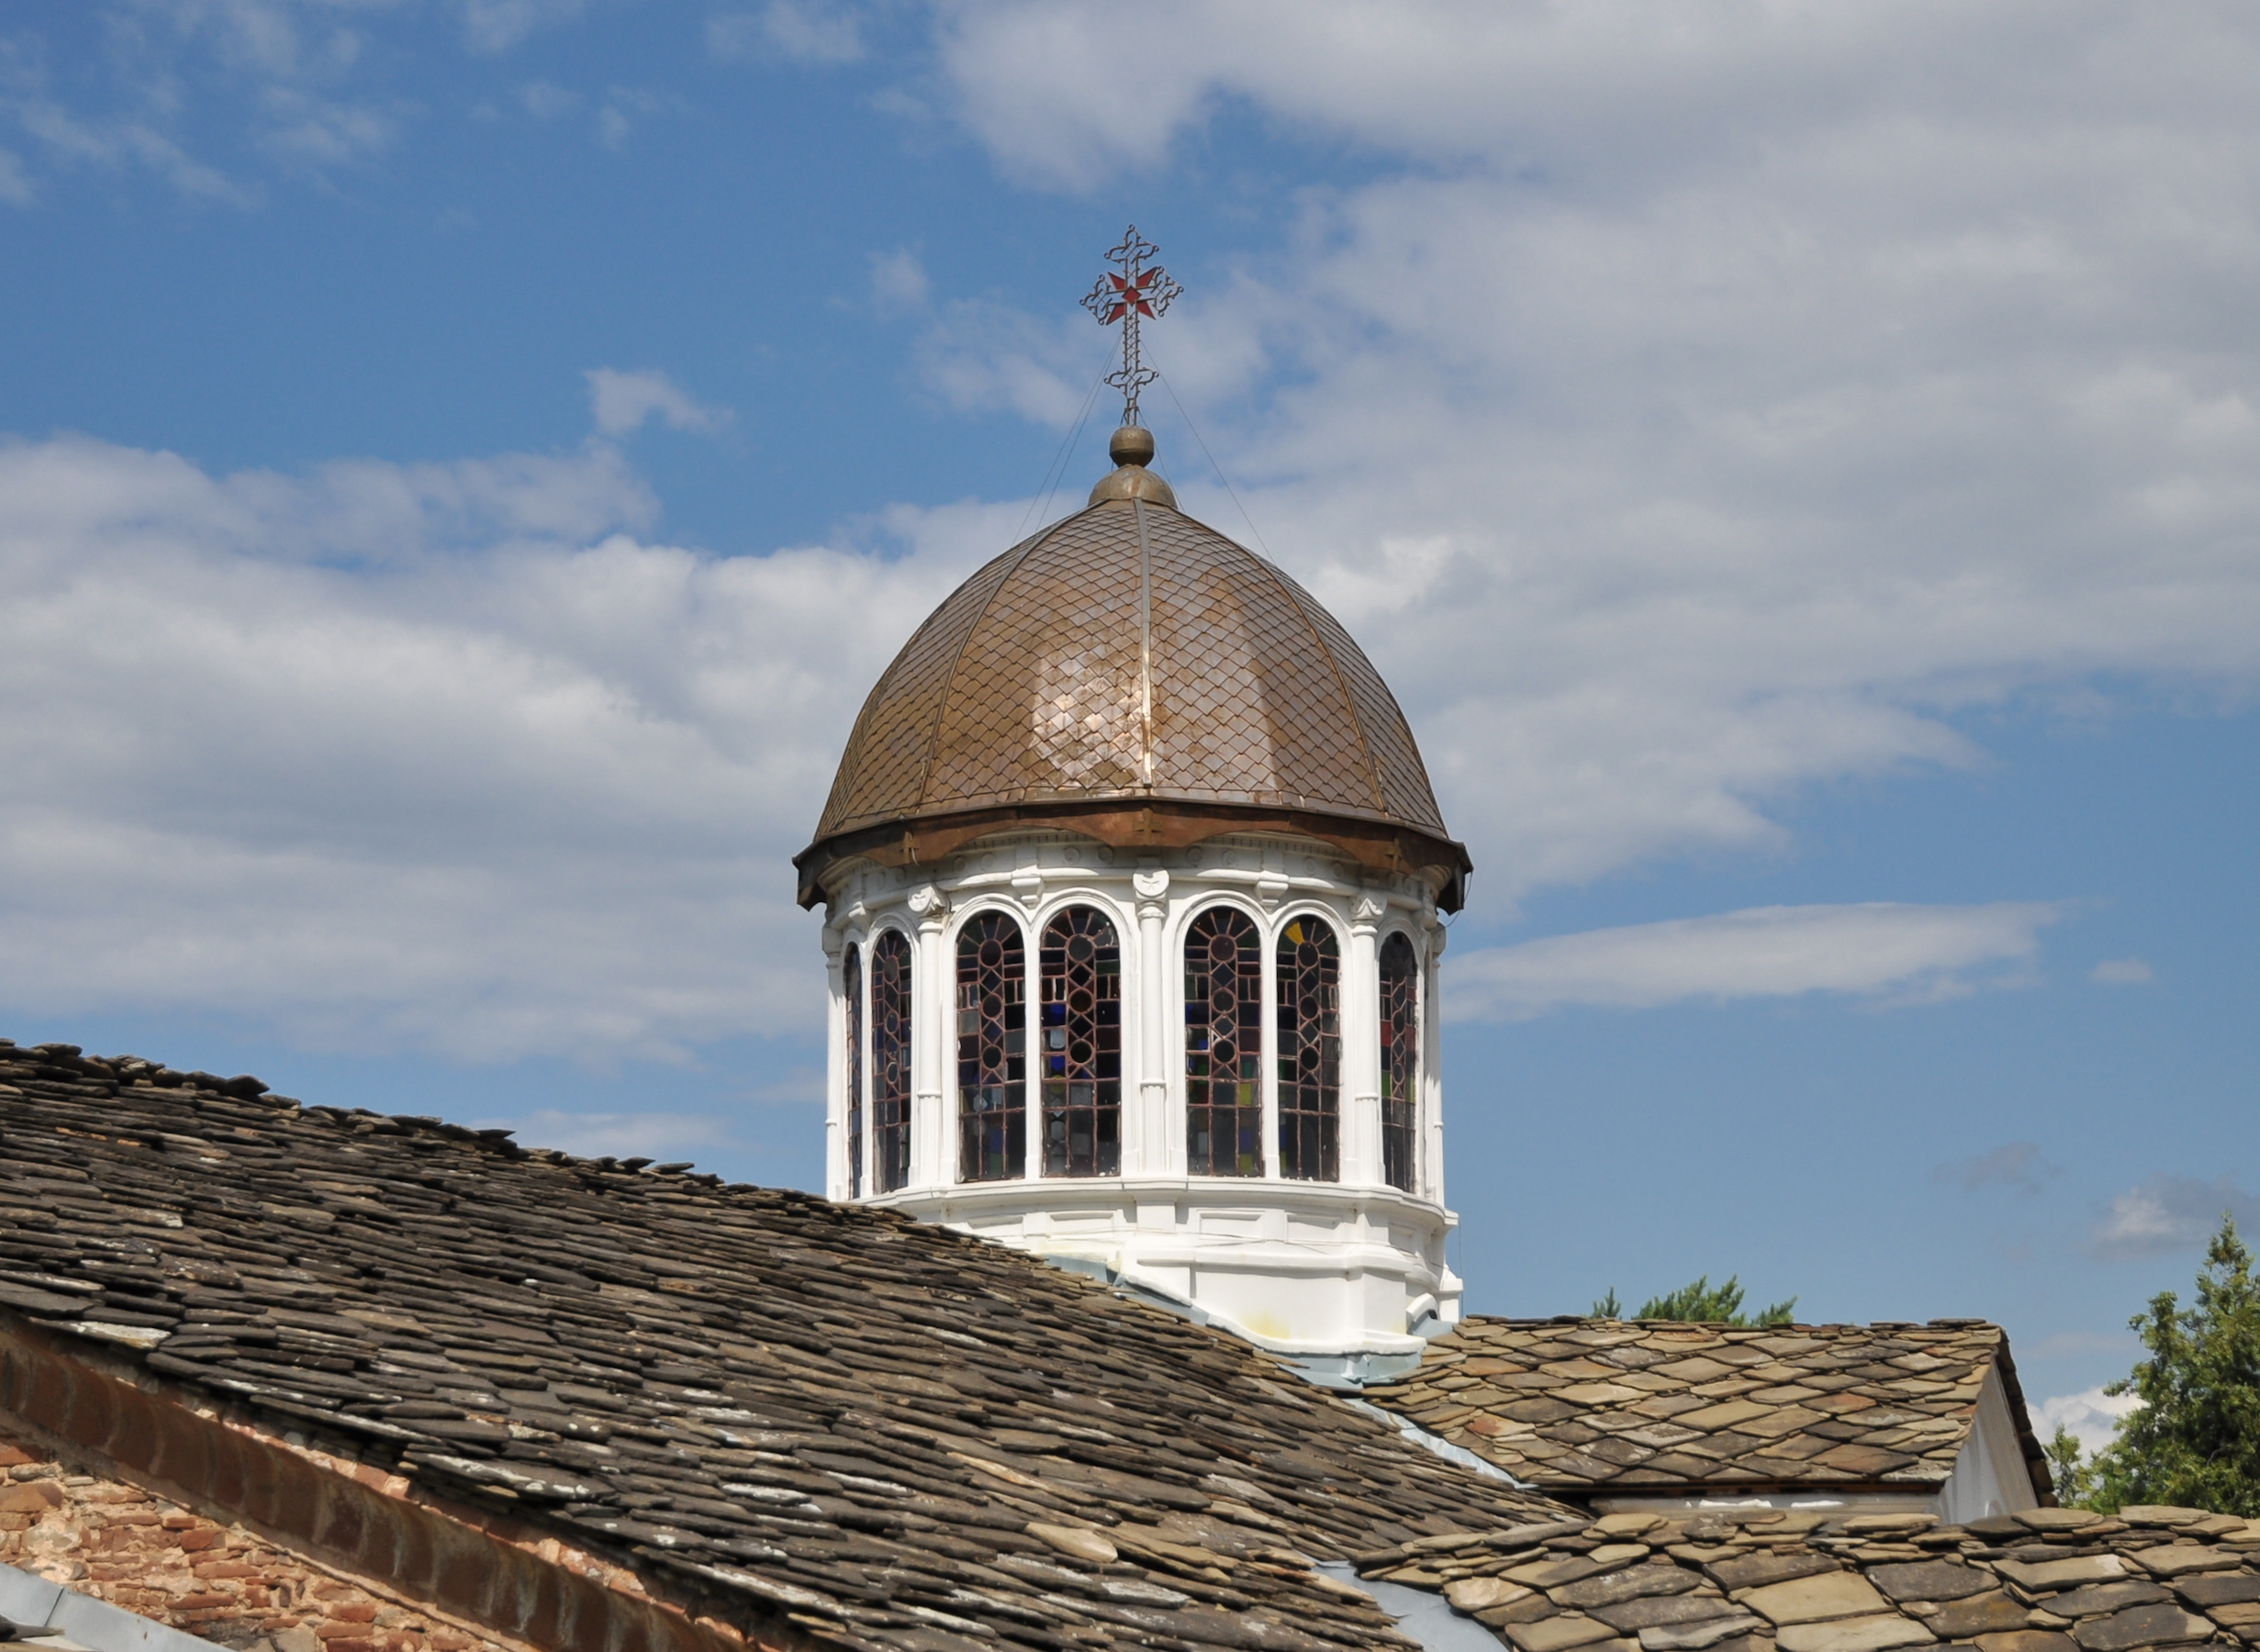 St Paraskeva Petka Church Dome - Troyan